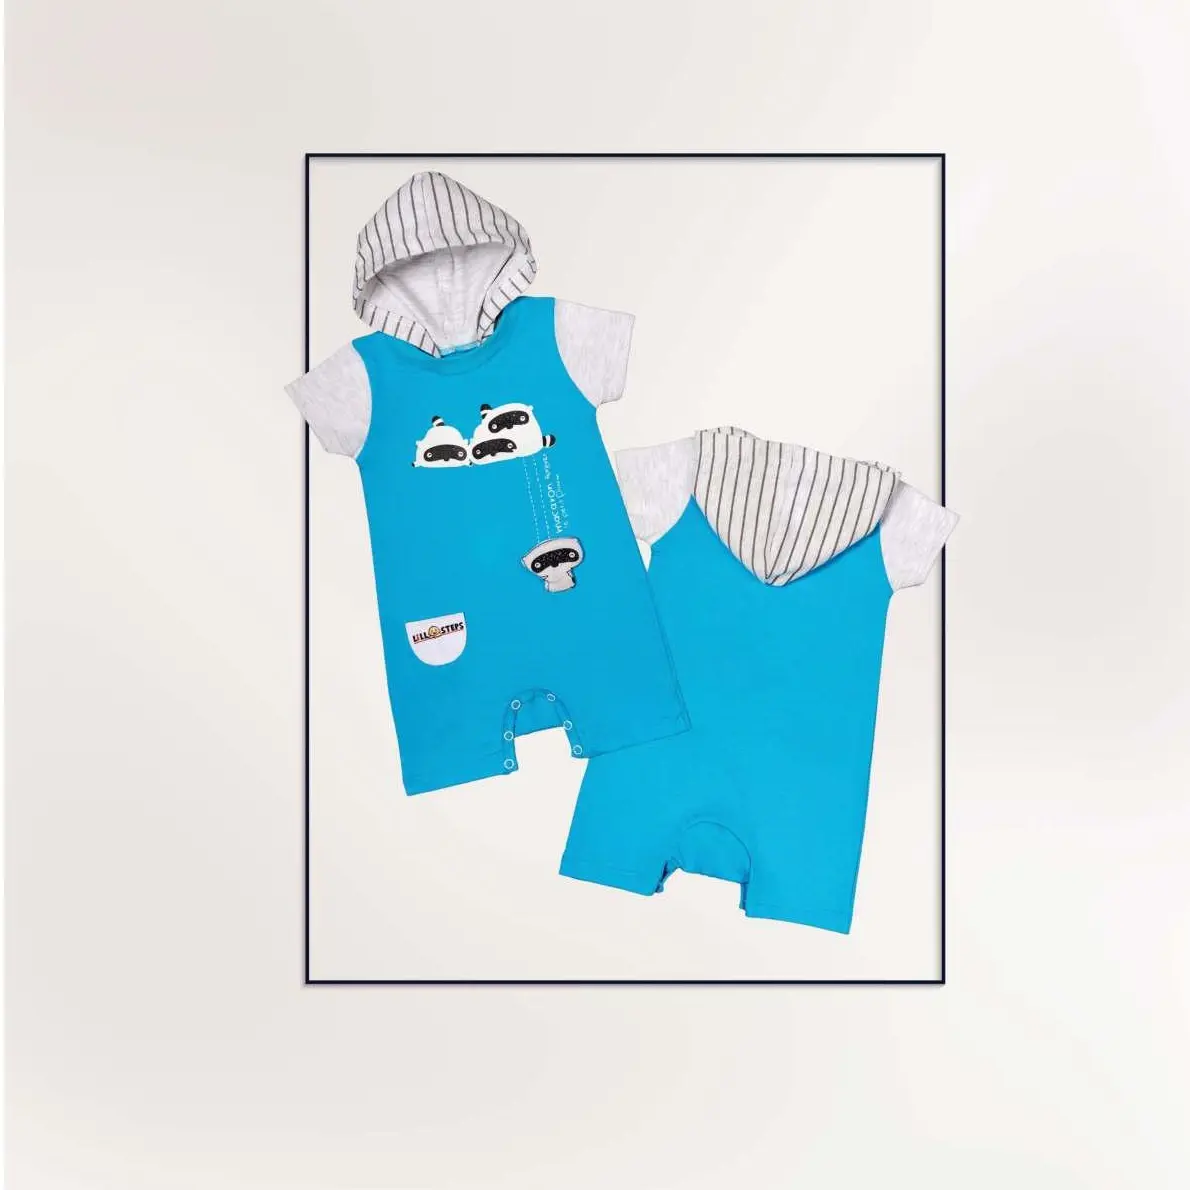 Lill100% örme pamuklu kumaş bebek giyim Motif baskılı tulum hint ihracatçısı toplu olarak satılık